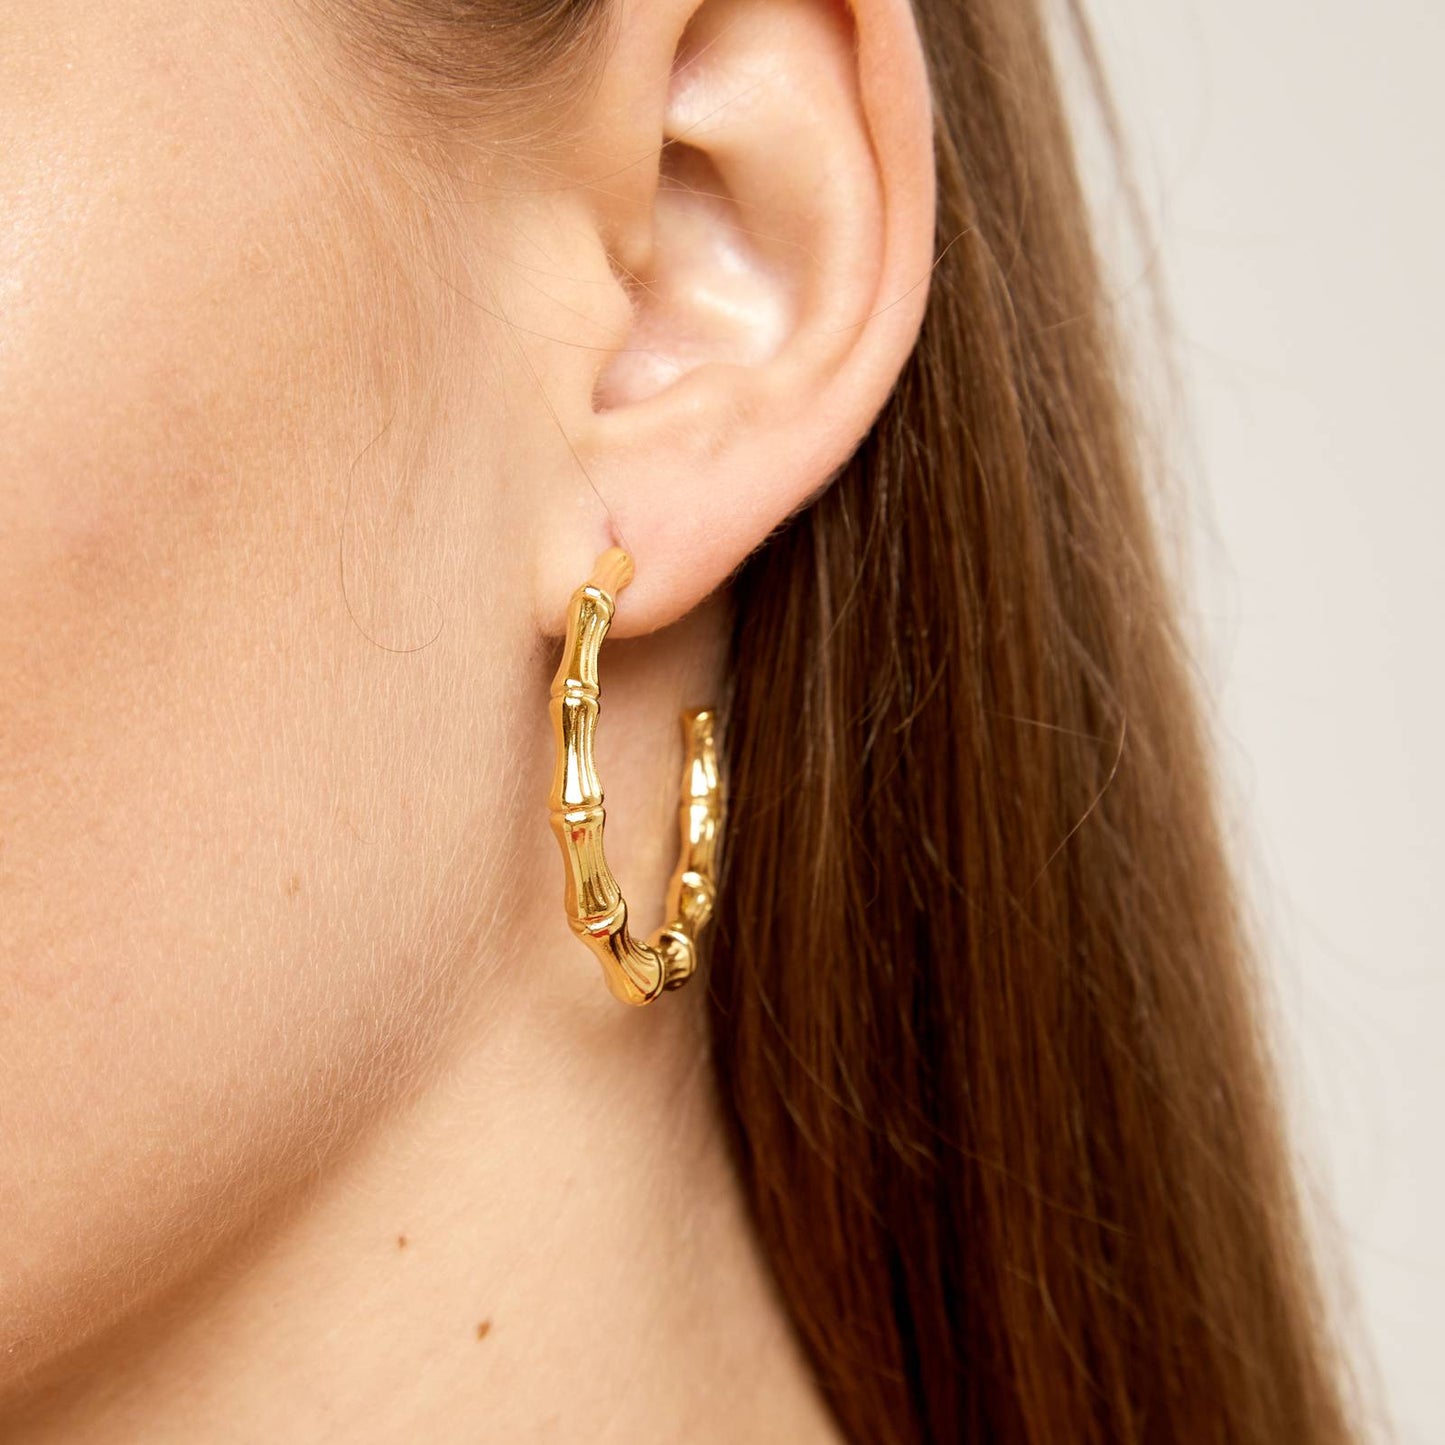 18K gold plated Stainless steel hoop earrings